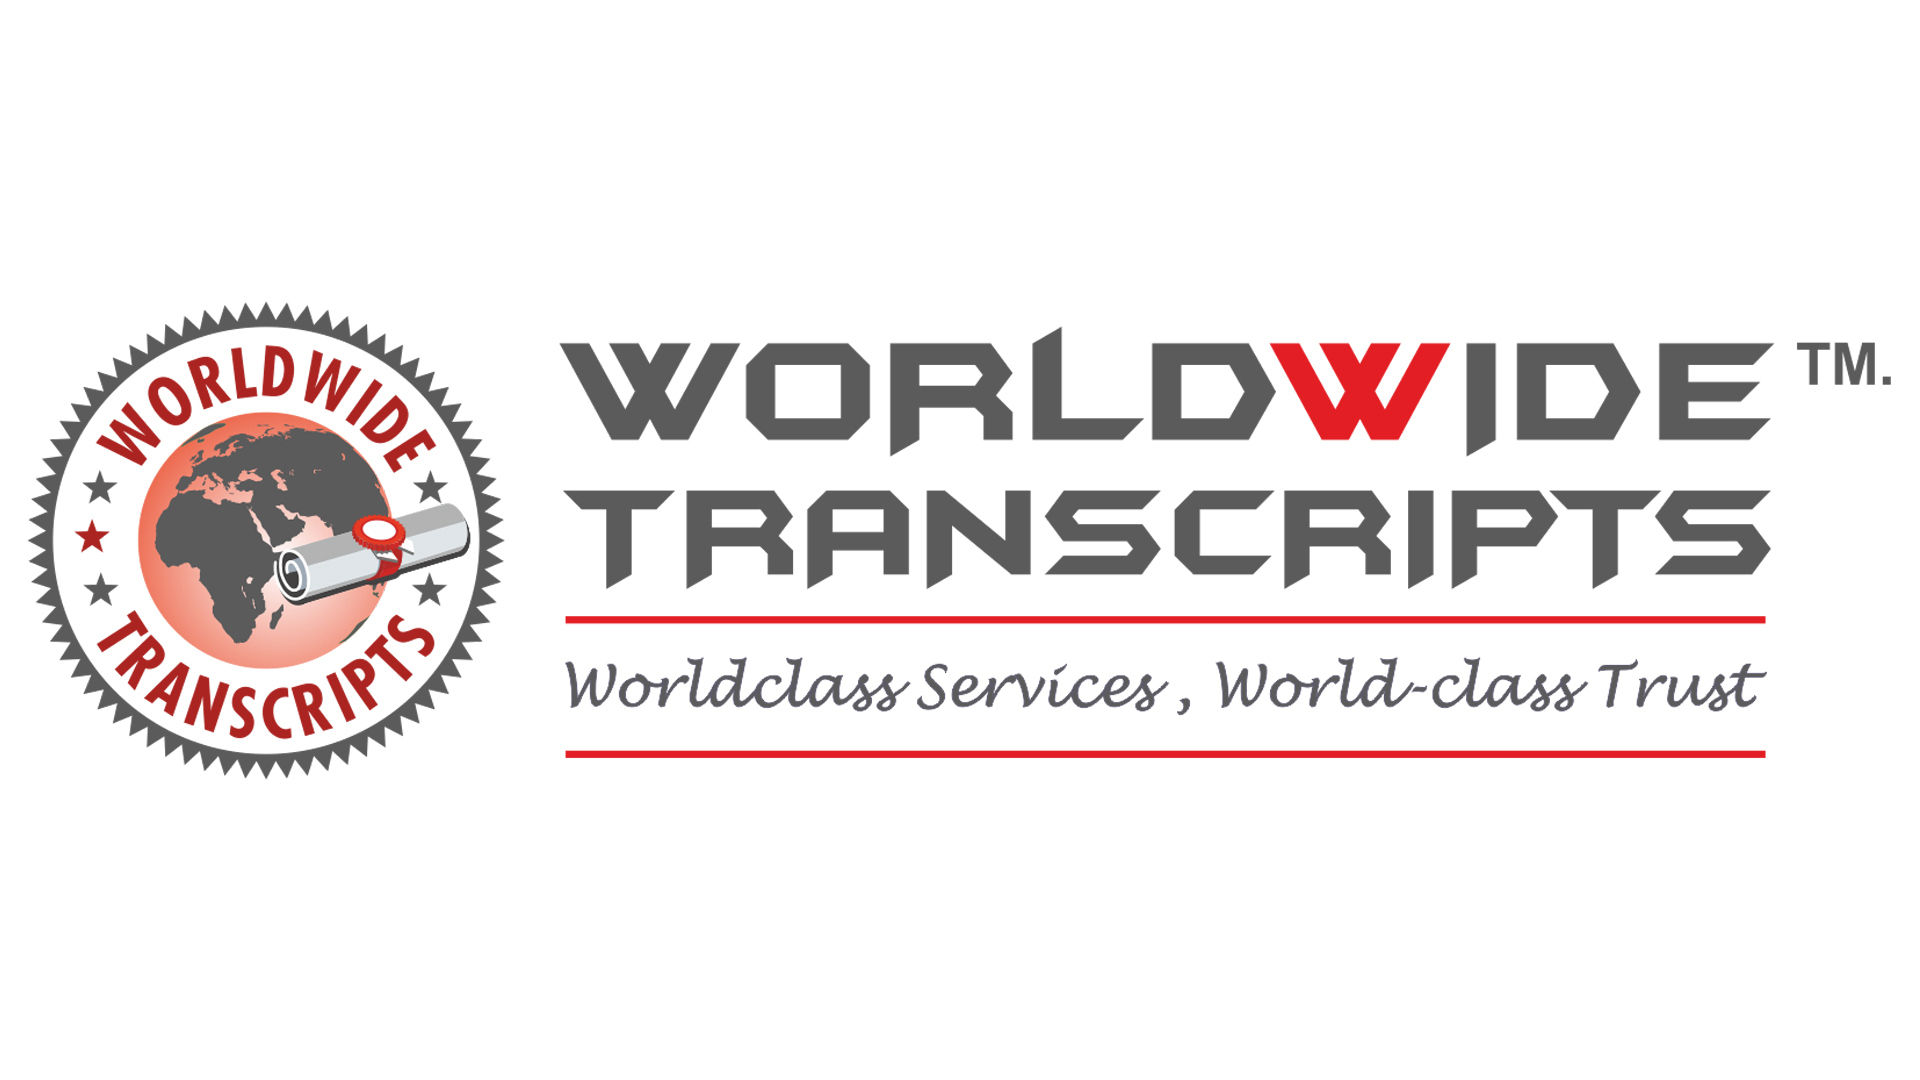 Worldwide Transcripts website